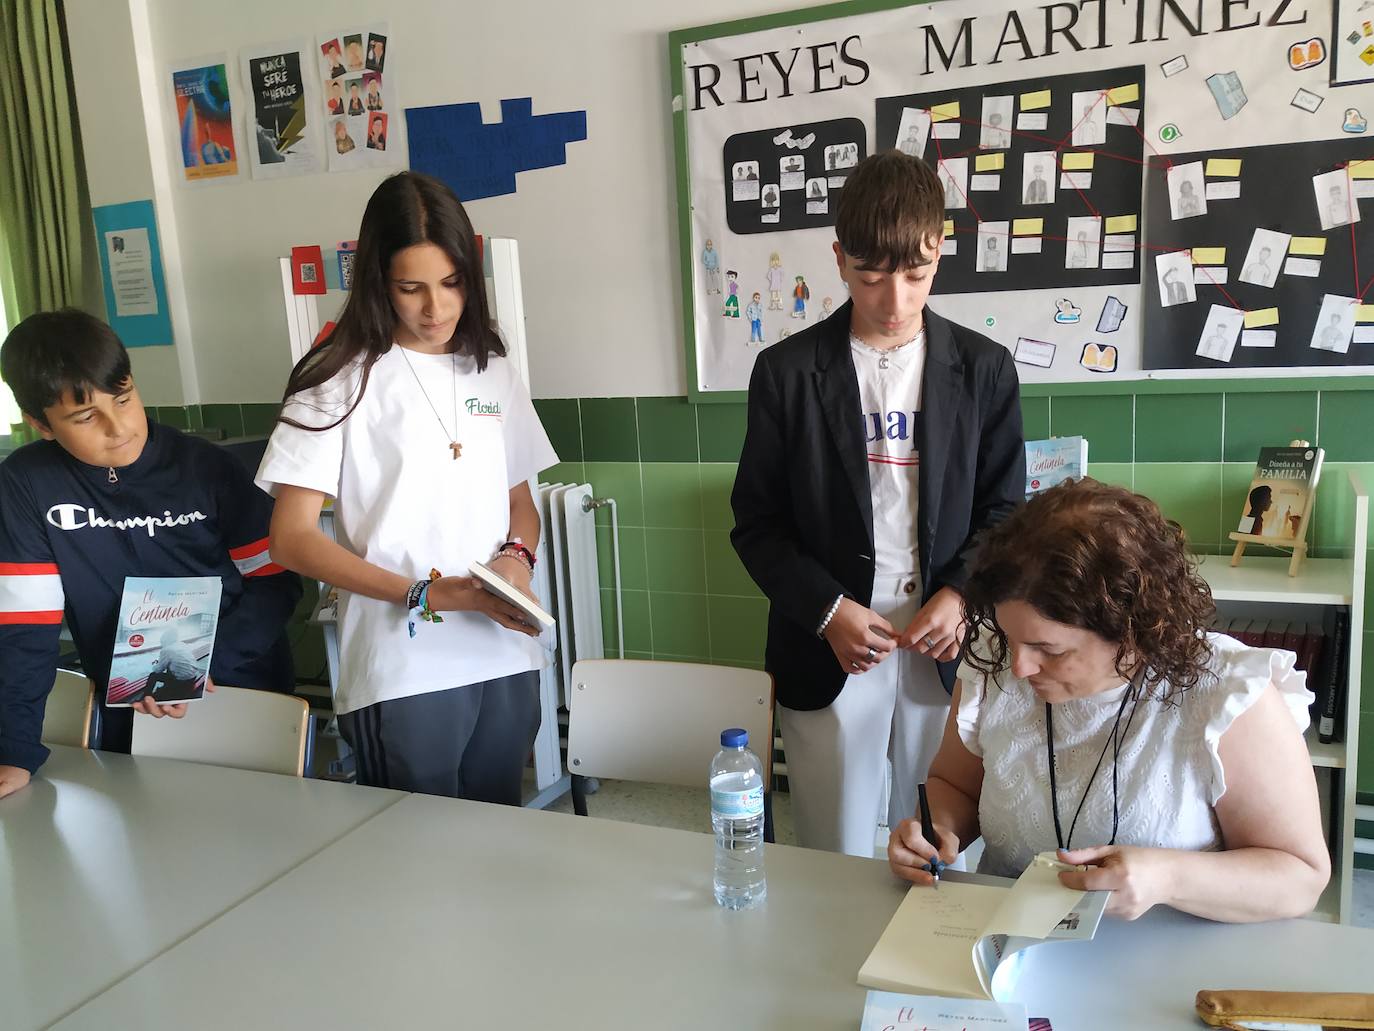 Imagen principal - Alumnos del IESO Vía de la Plata comparten un encuentro literario con la escritora madrileña Reyes Martínez